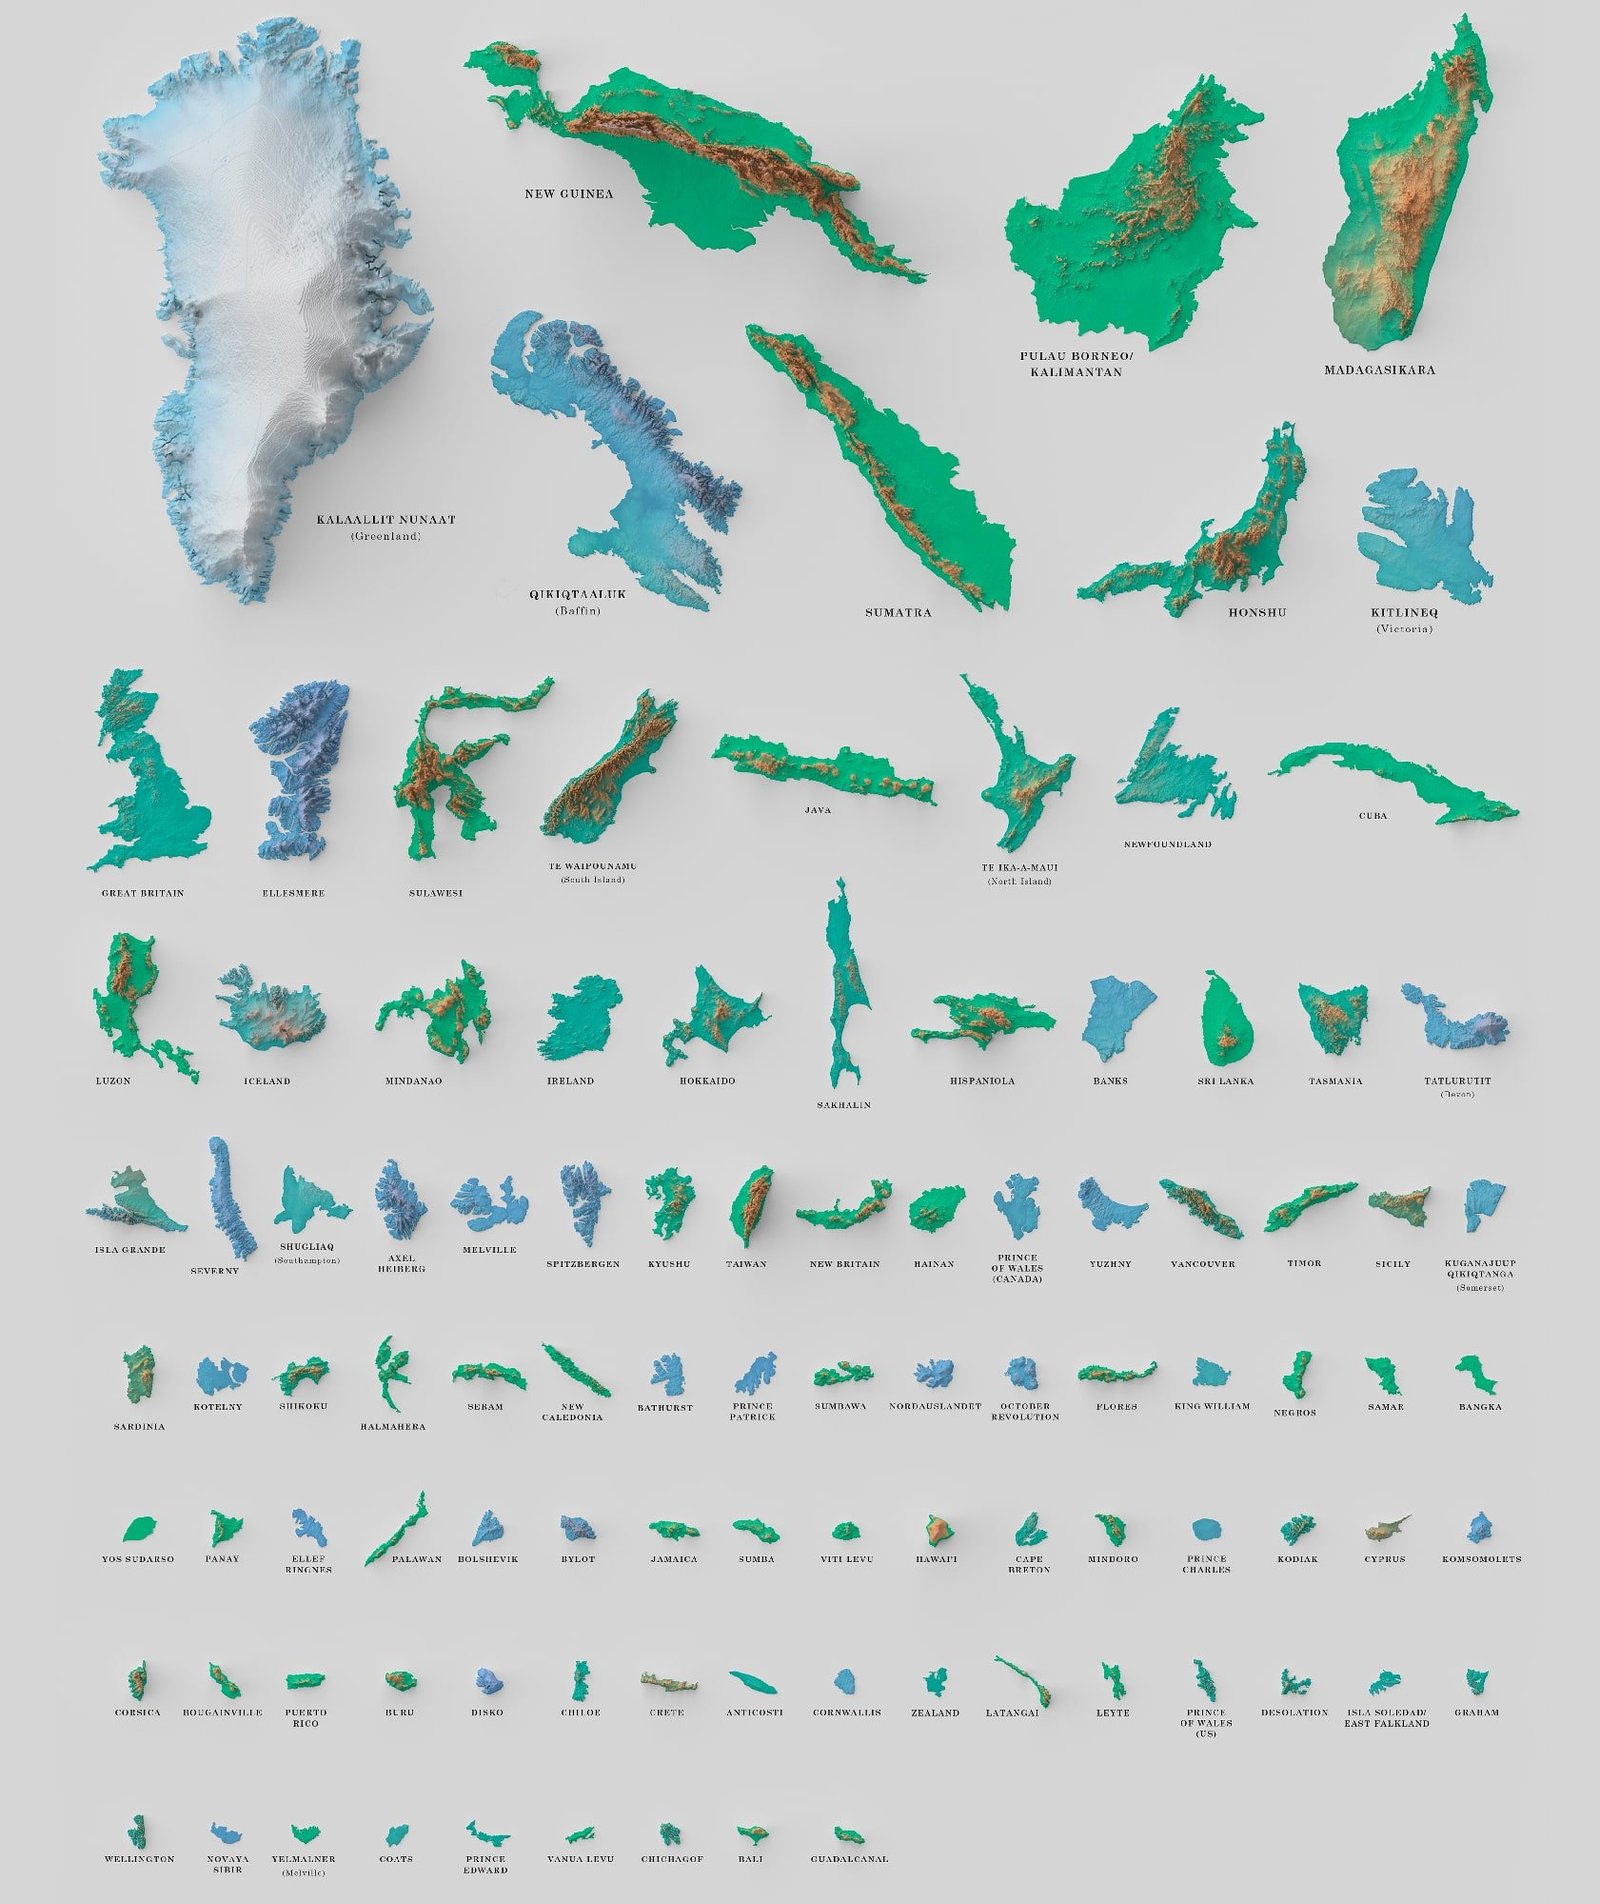 3D Models of Islands